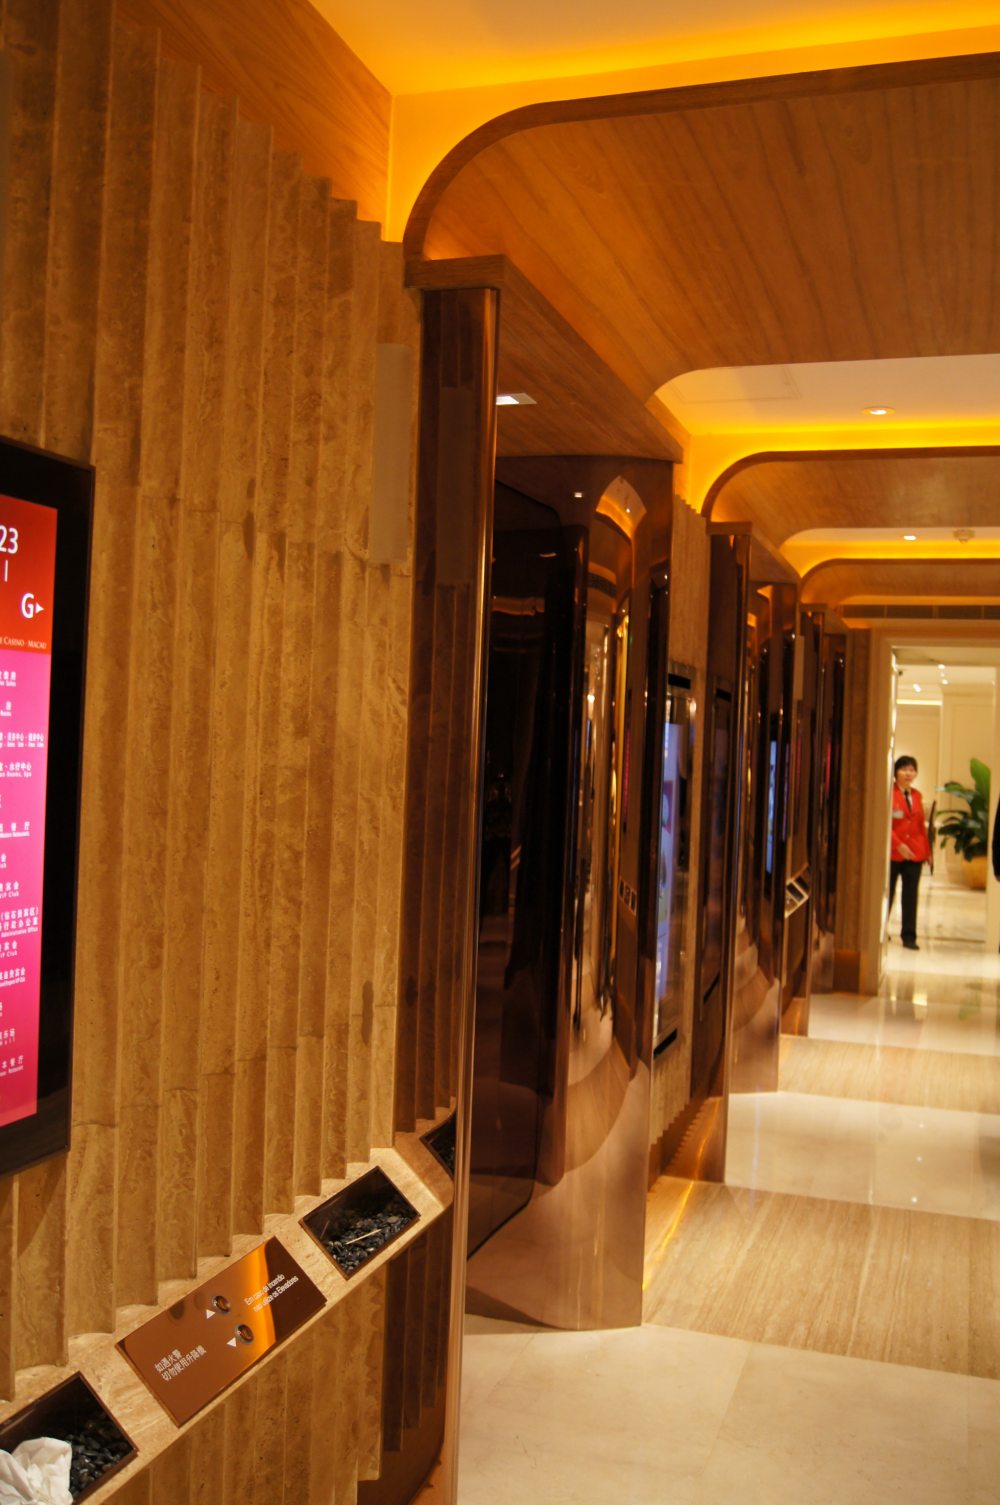 澳门英皇娱乐酒店Grand Emperor Hotel， Macau_DSC03837_调整大小.JPG